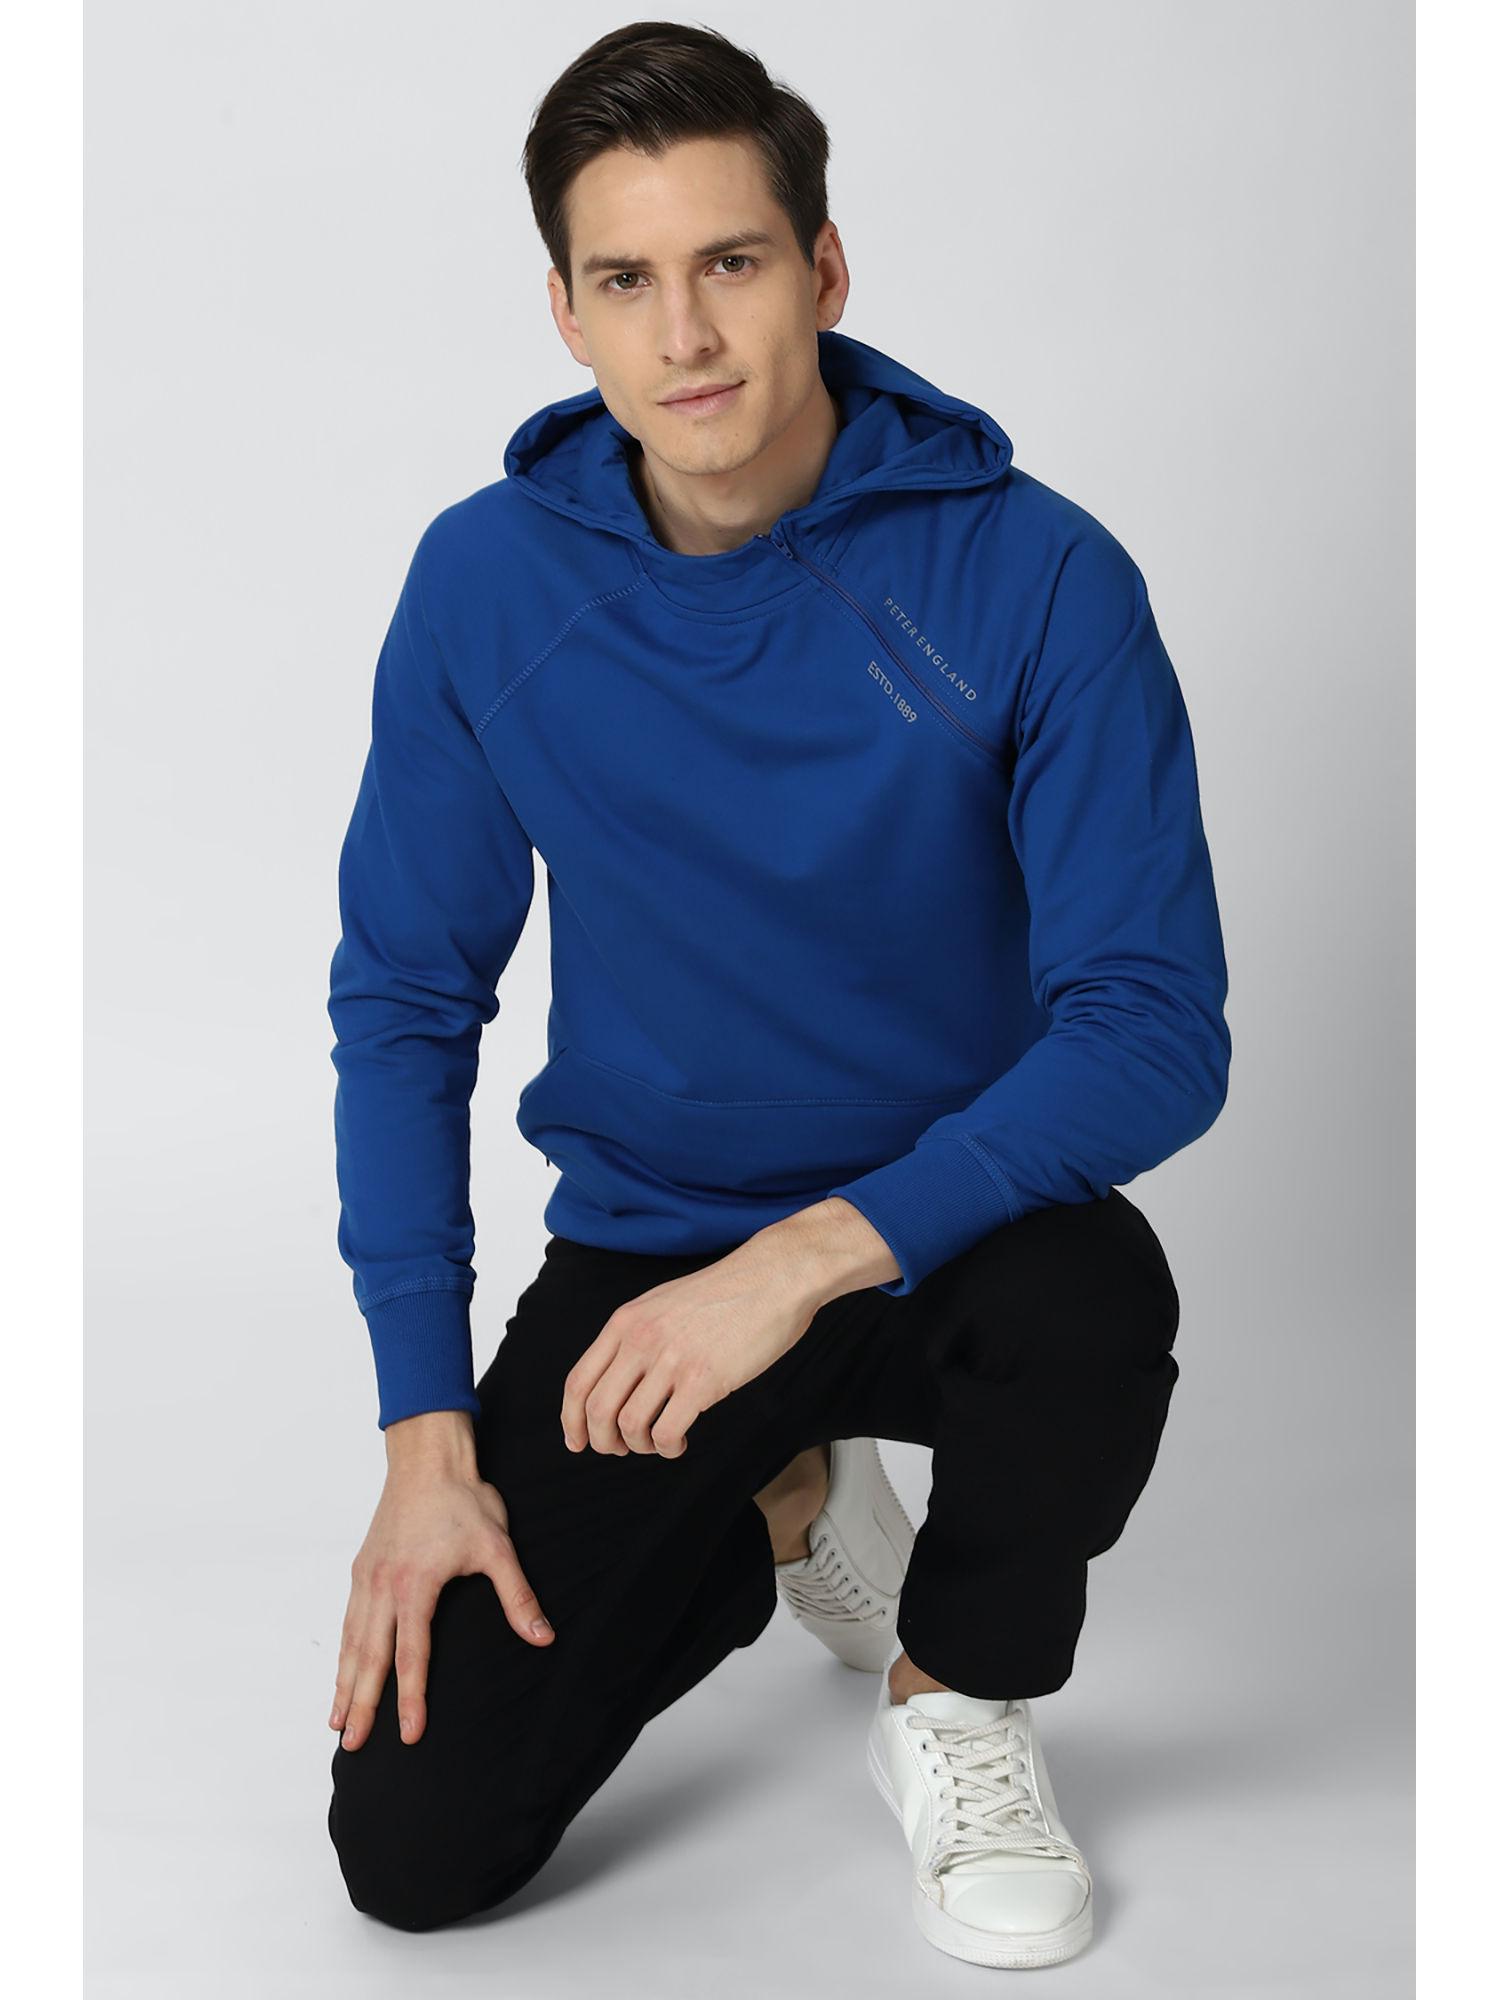 men-blue-sweatshirt